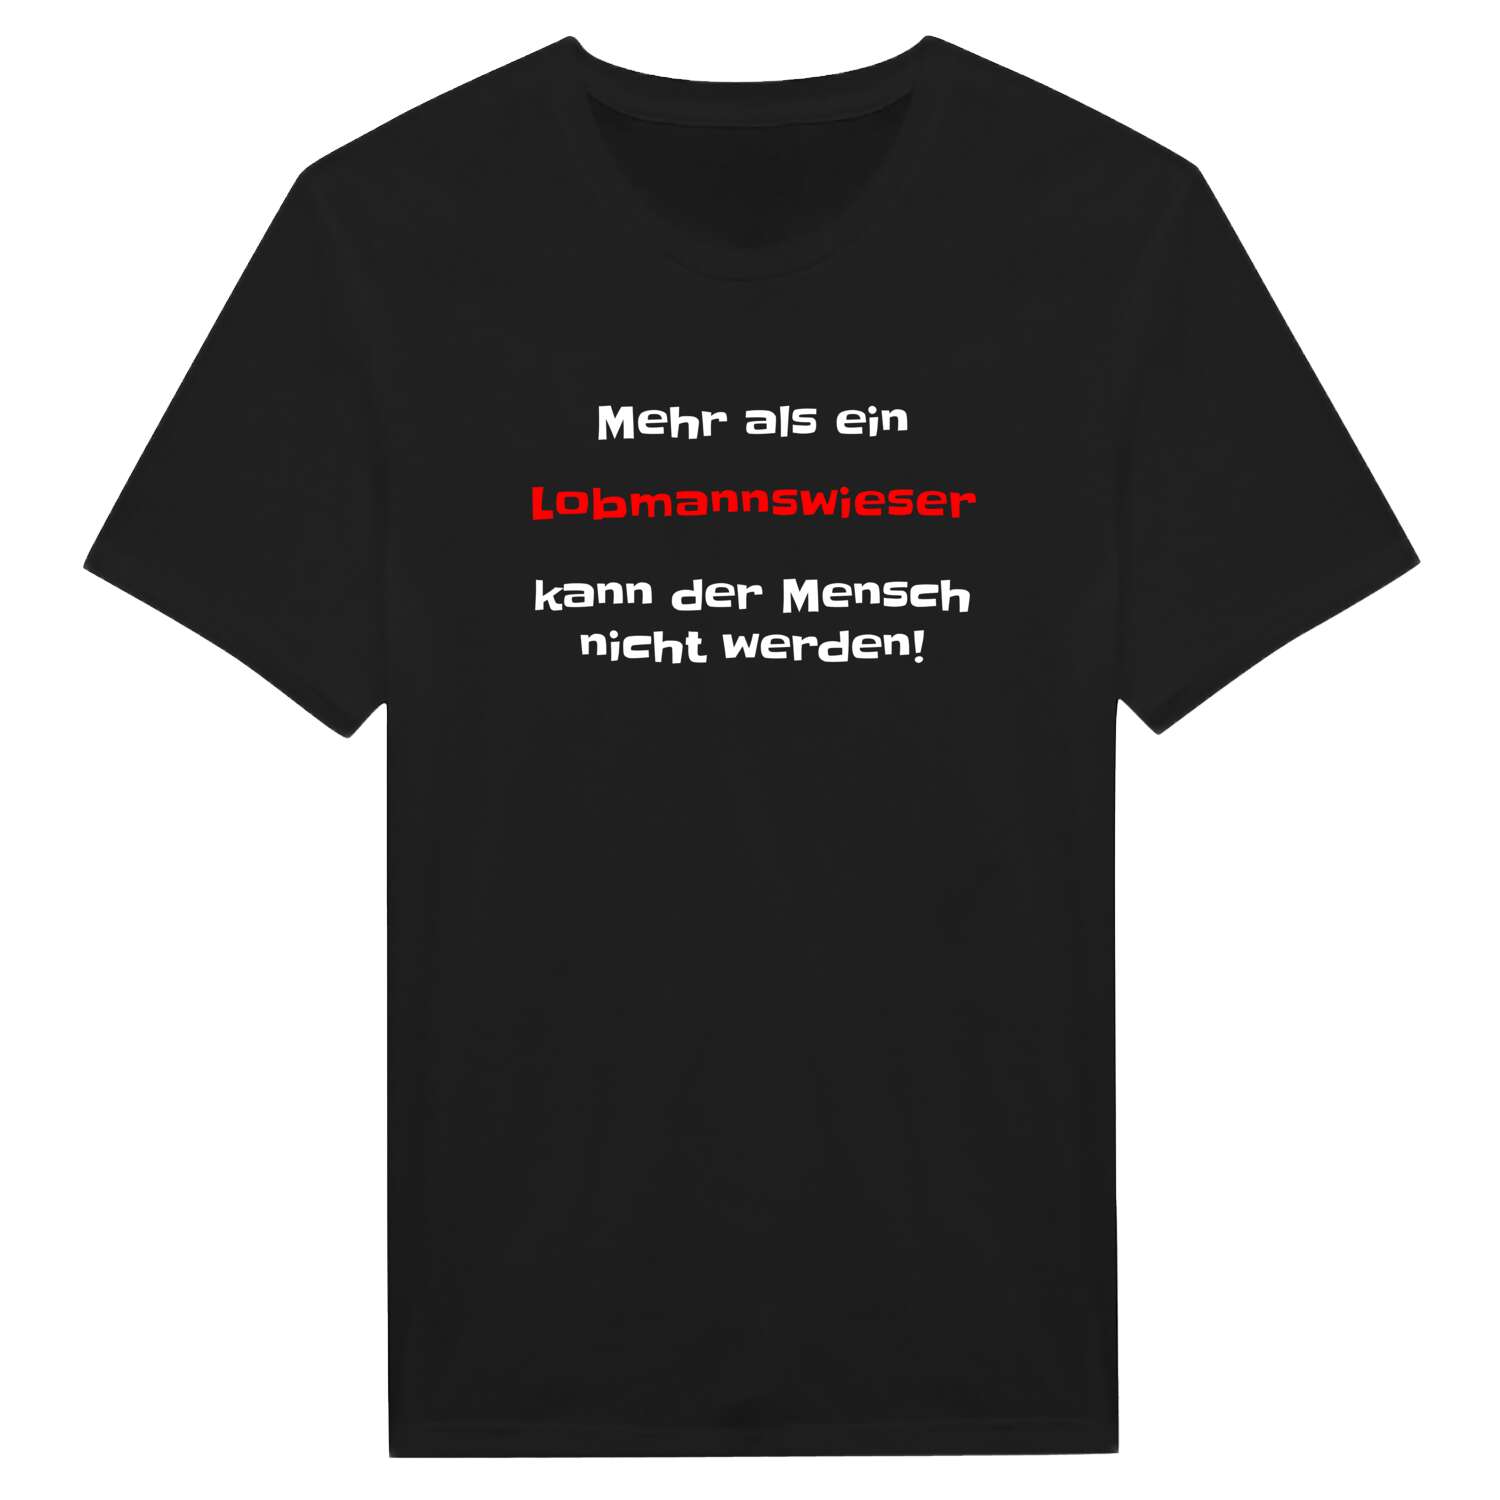 Lobmannswies T-Shirt »Mehr als ein«